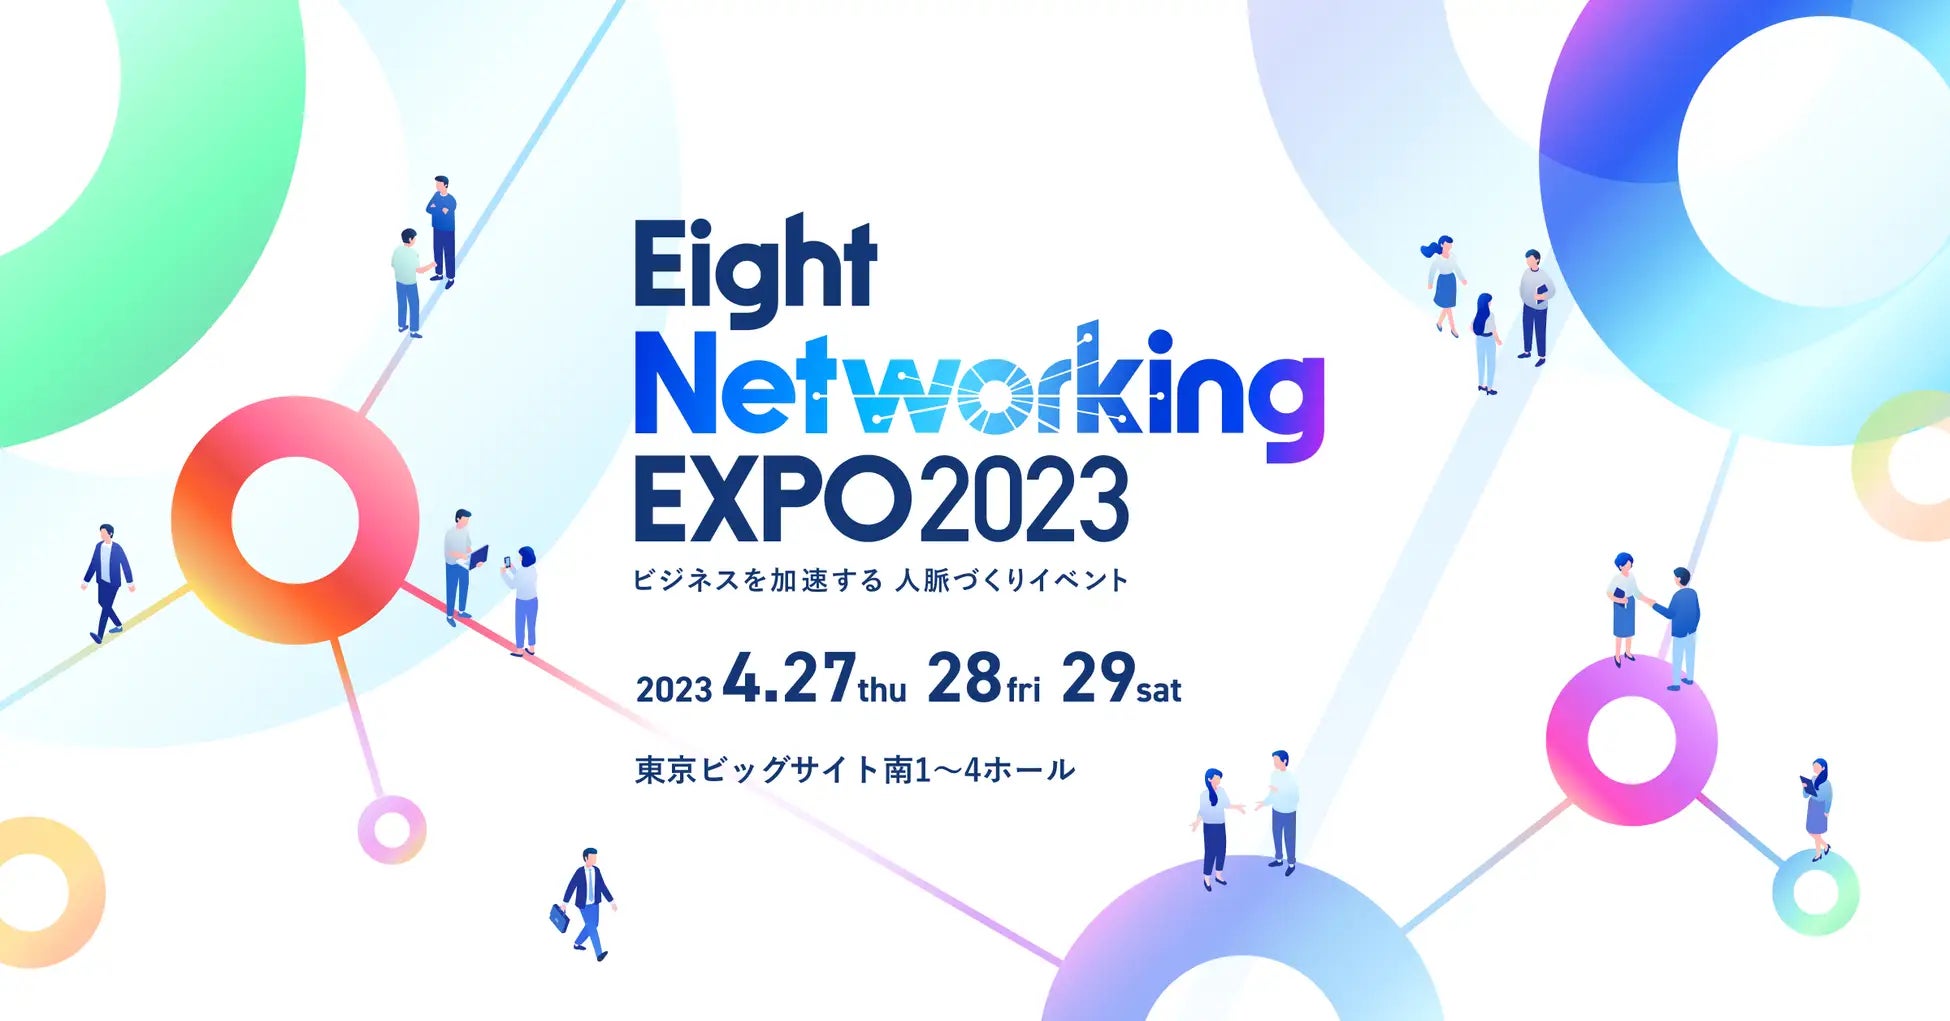 ペイトナー、sansan株式会社主催「Eight Networking EXPO 2023」に出展